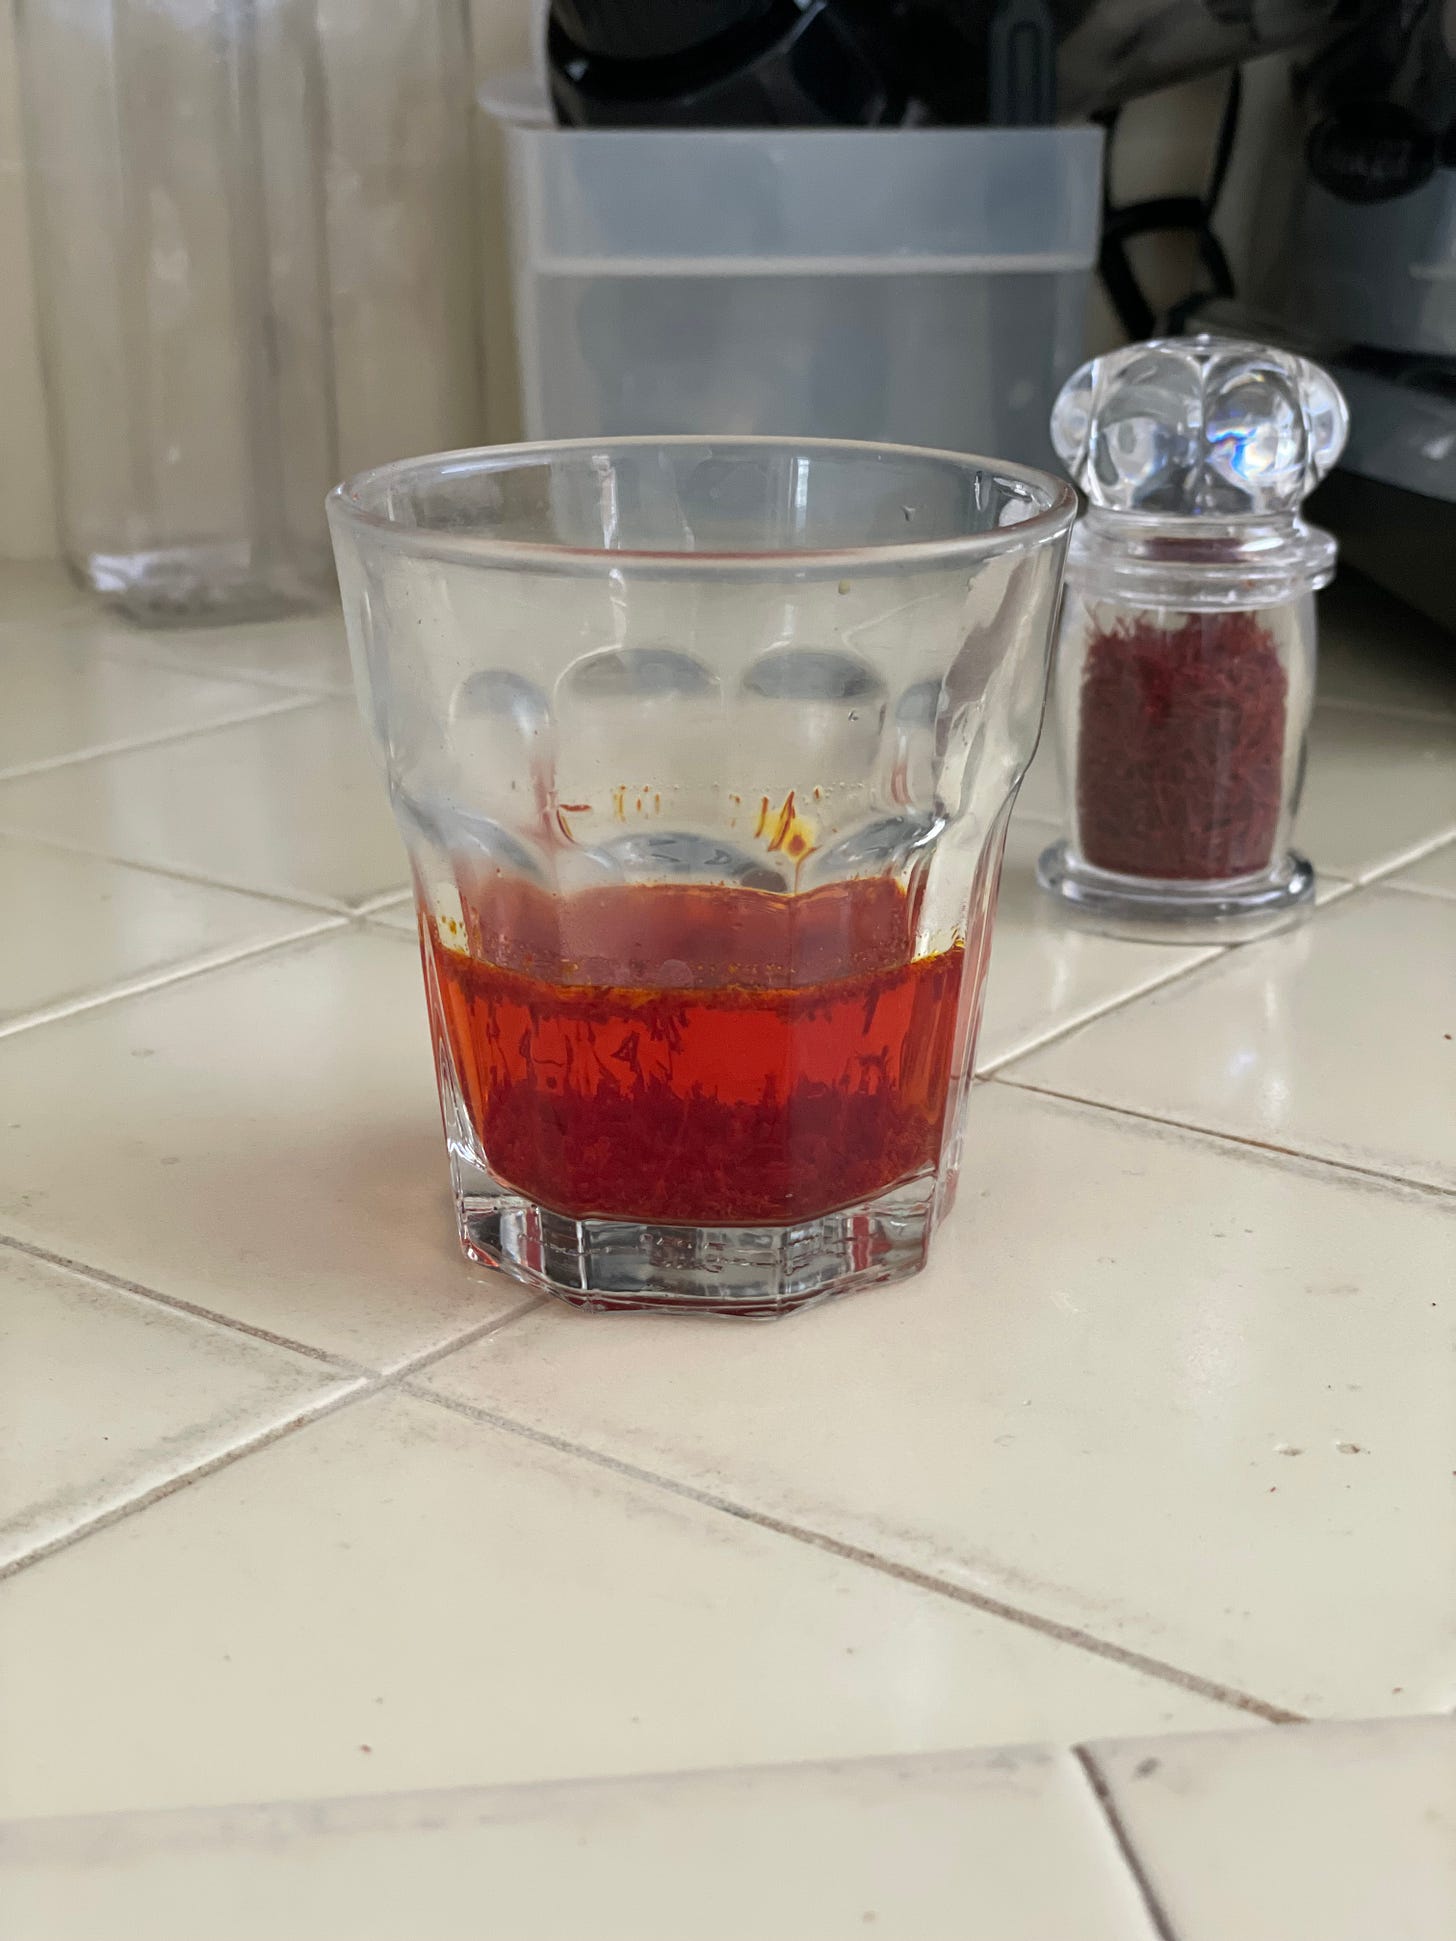 Saffron water mixture